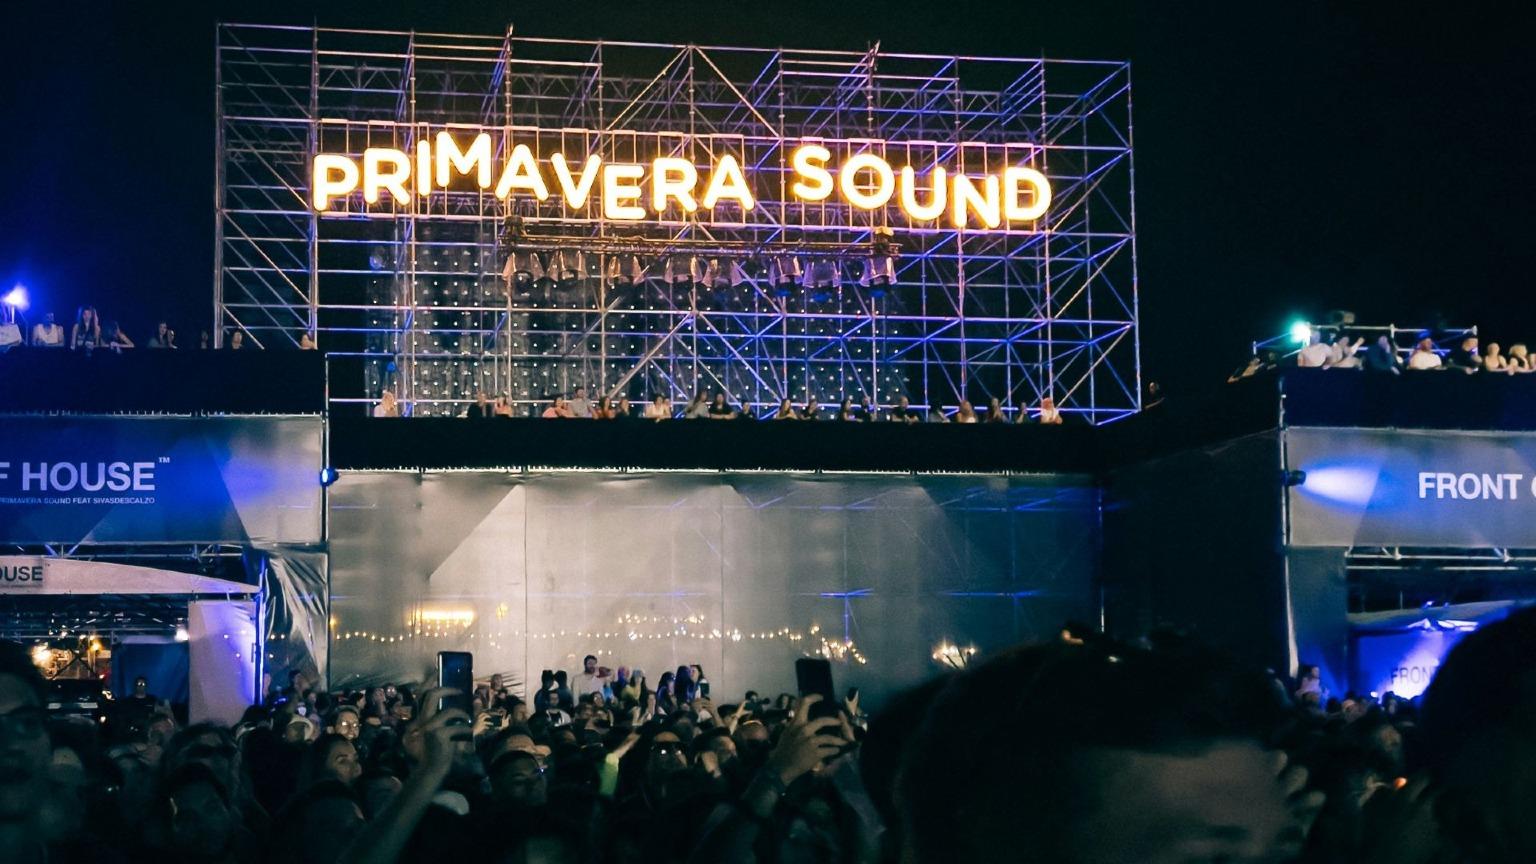 Scène vibrante de la scène du Primavera Sound à Porto, illuminée de lumières colorées alors qu'une foule de festivaliers enthousiastes profite du spectacle nocturne.